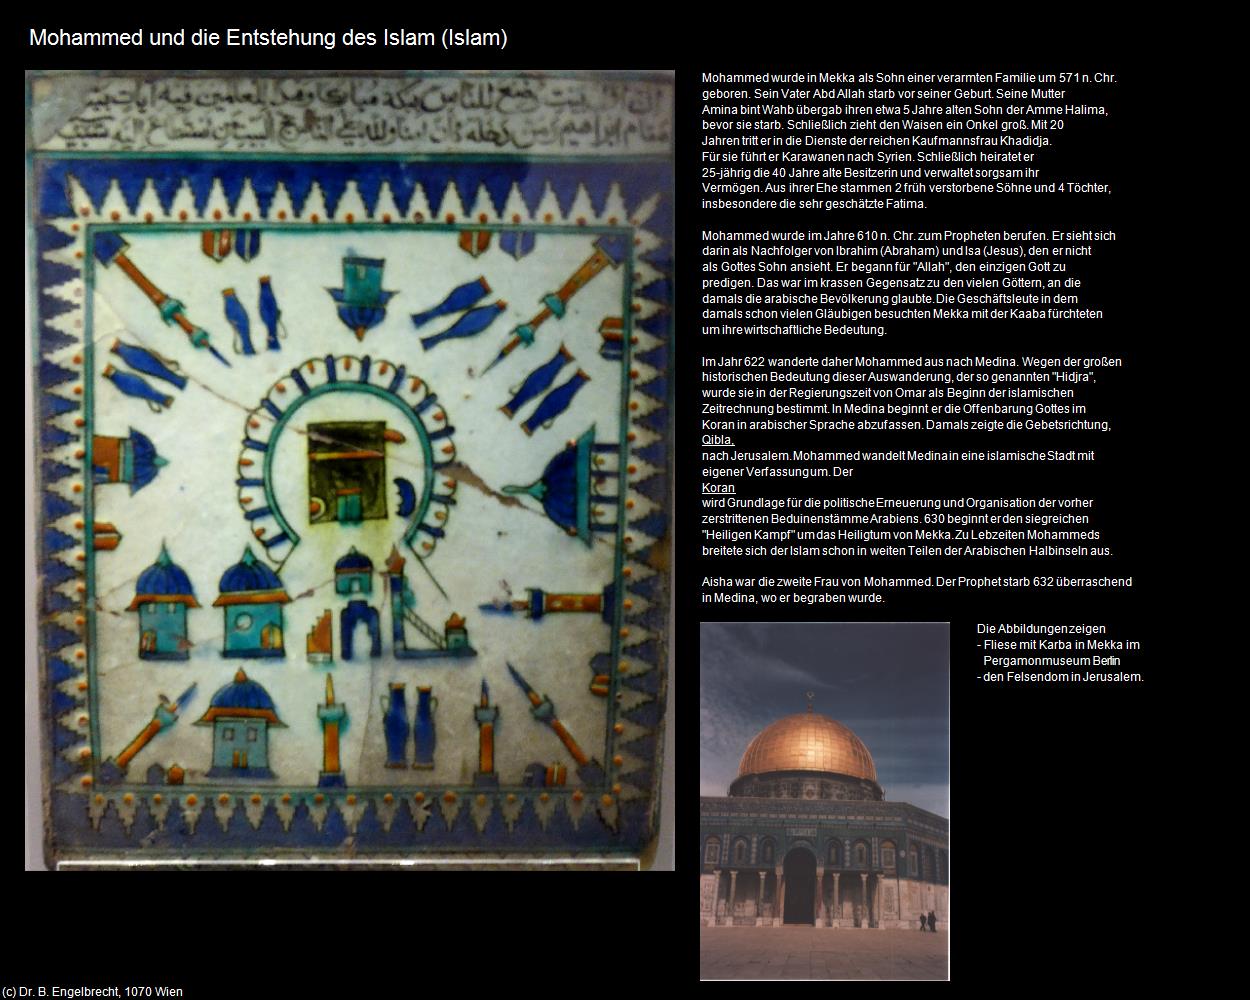 Mohammed und die Entstehung des Islam  (IRAN-Religion II - Islam) in Iran(c)B.Engelbrecht